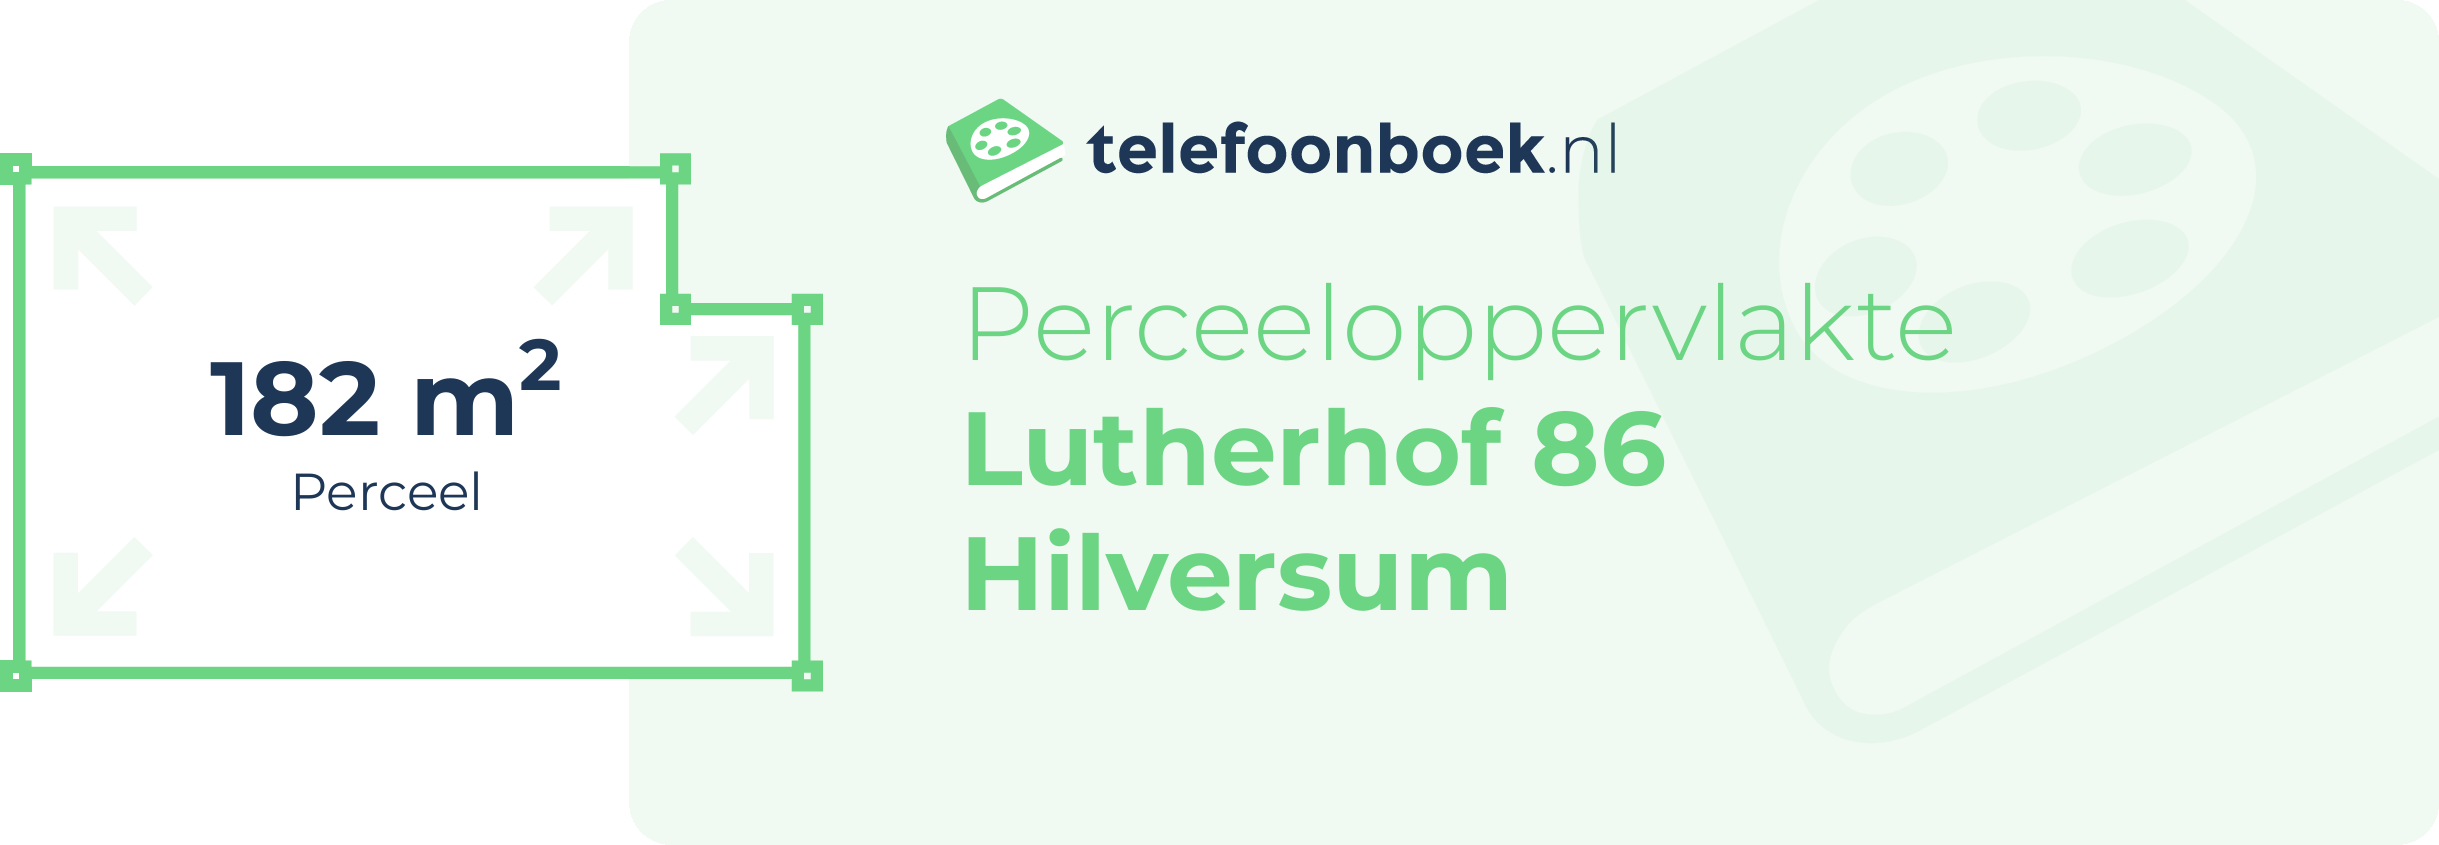 Perceeloppervlakte Lutherhof 86 Hilversum